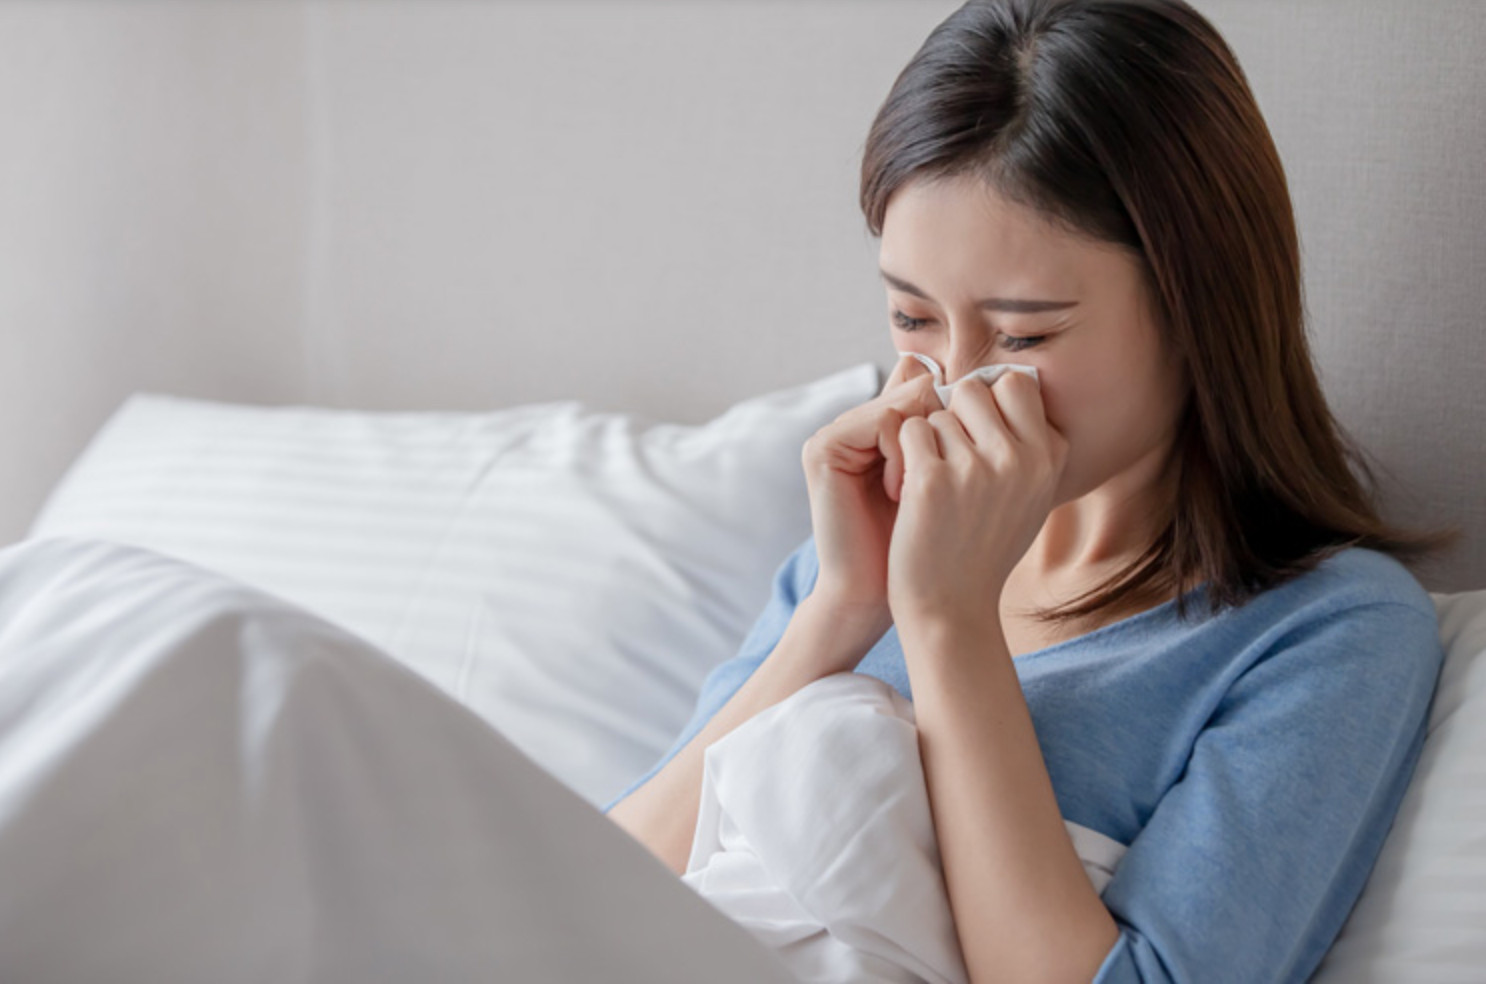 Chuyên gia chỉ cách phát hiện sớm bệnh cúm và điều trị kịp thời - Ảnh 1.